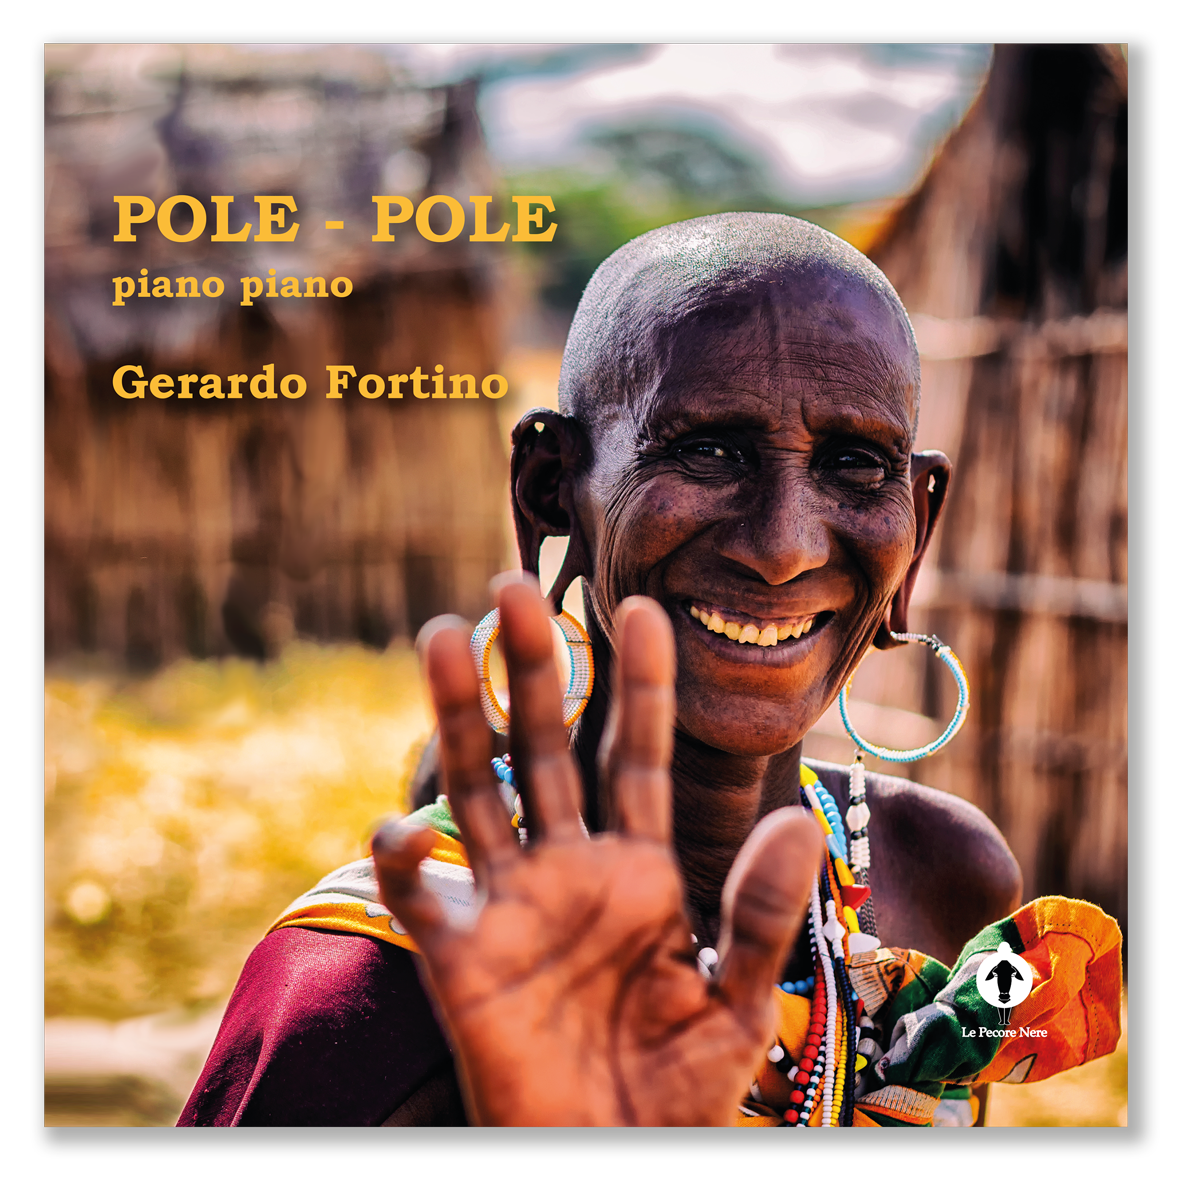 PECORE NERE EDITORIAL, Pole pole, Gerardo Fortino, Fotoreporter, Kenia, Tanzania, India, Zambia